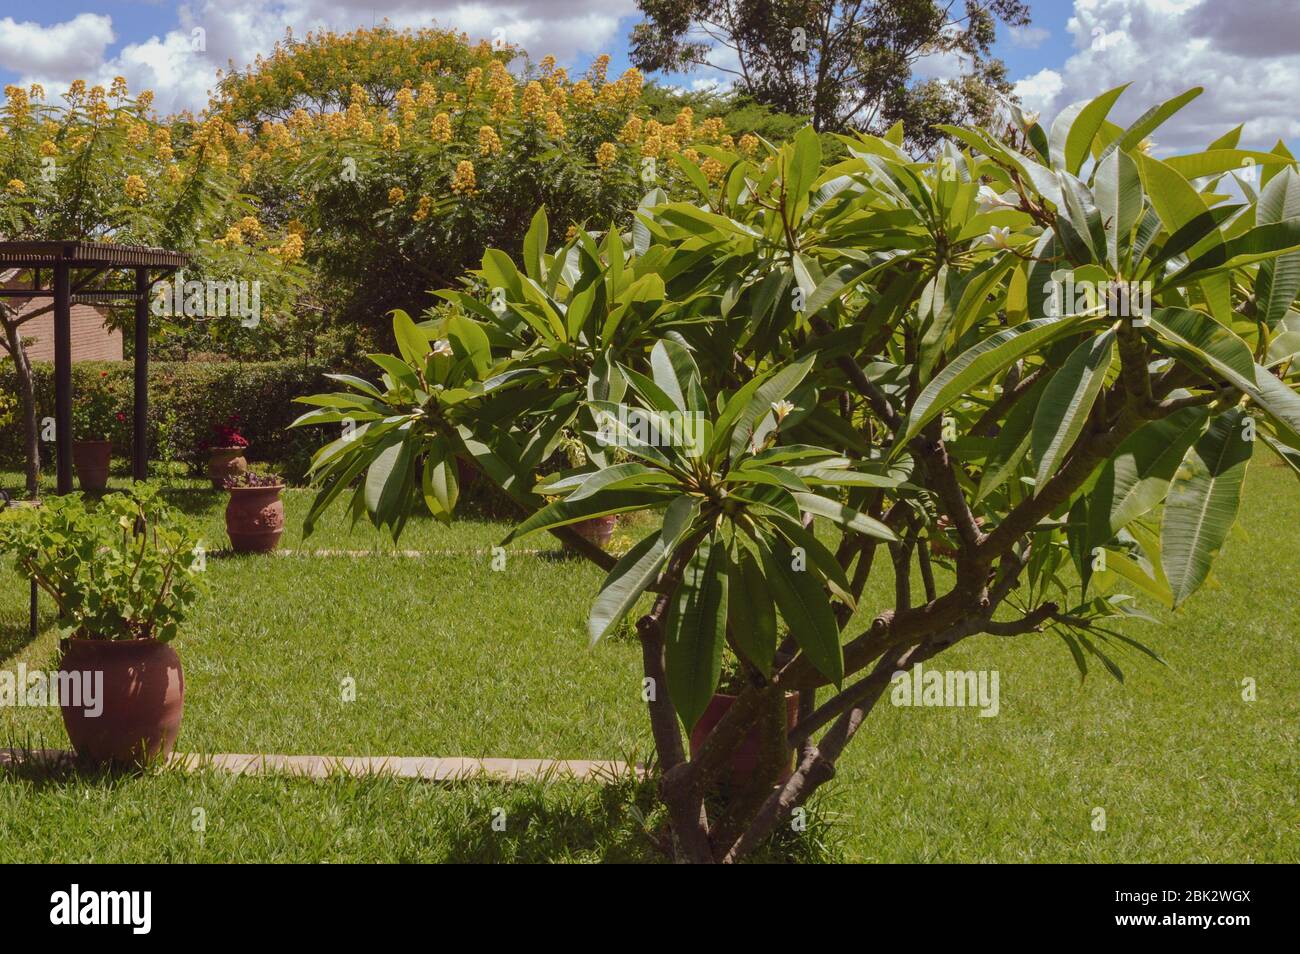 DEDZA, MALAWI, AFRIKA - 25. MÄRZ 2018: Wunderschöne, üppig grüne Pflanze auf dem Töpferhof Dedza. Malawiische Landschaften, Felder mit grünem Gras, Bäume mit Stockfoto